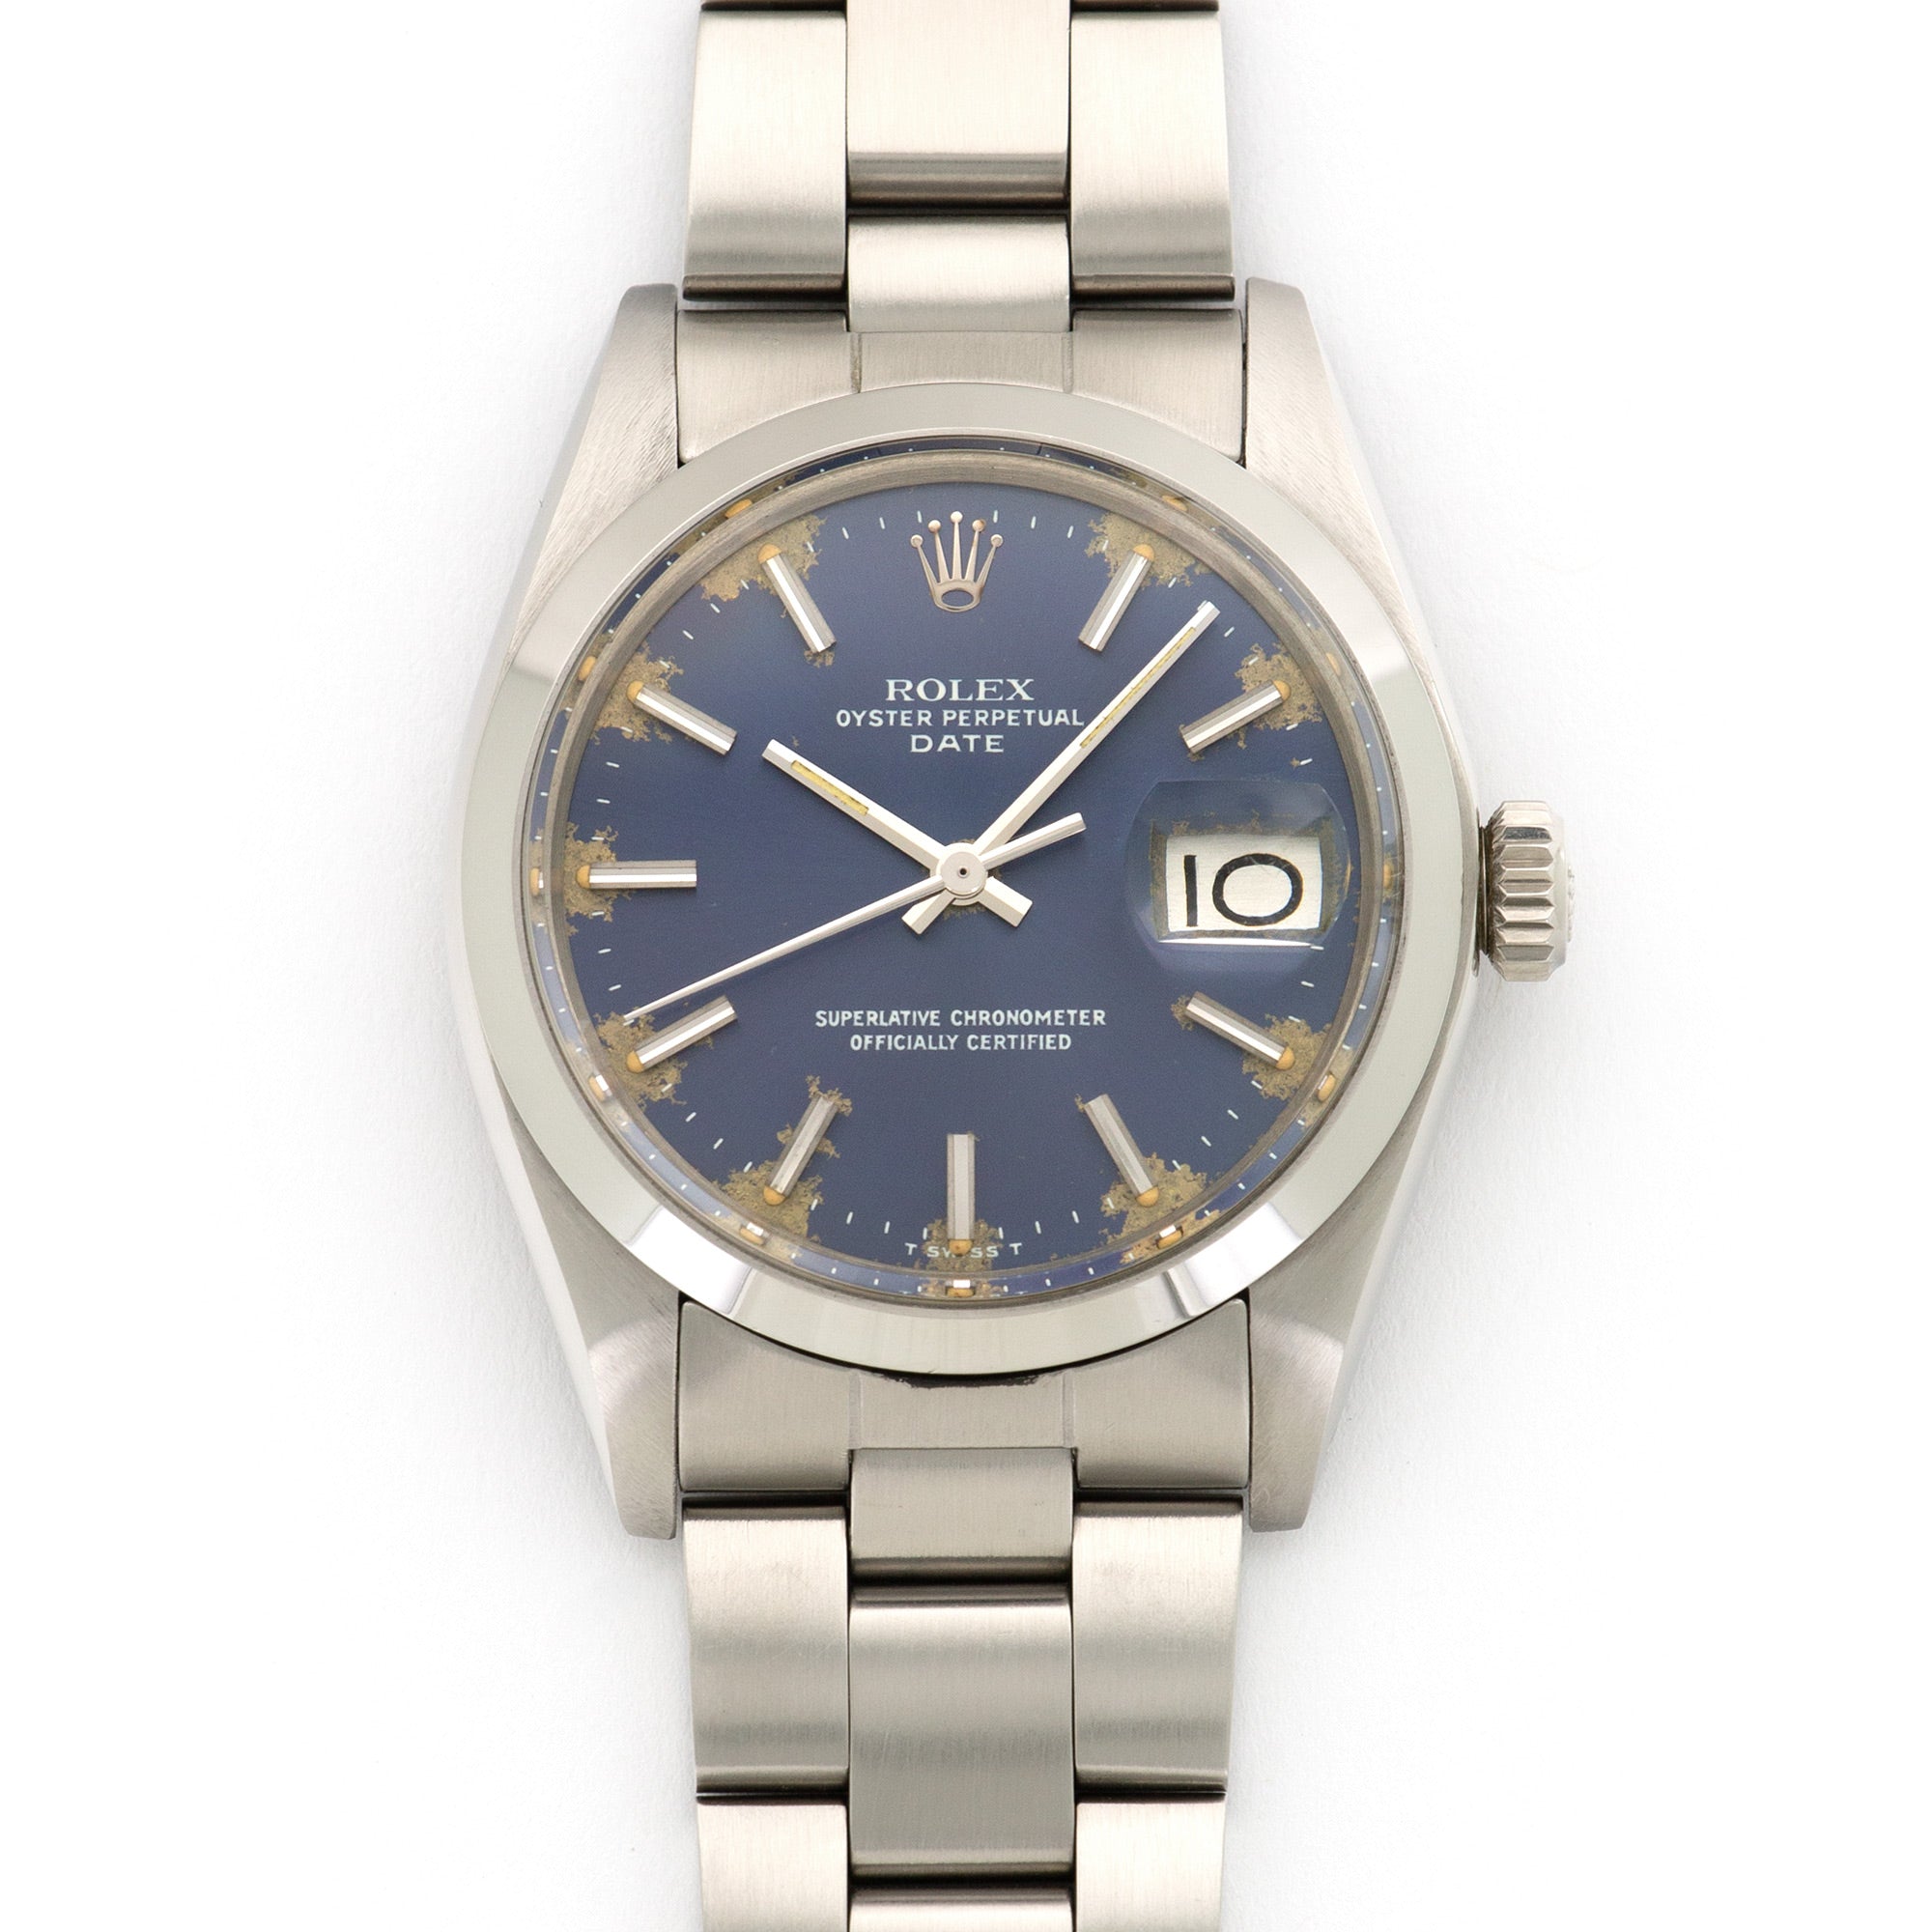 Rolex - Rolex Steel Date Watch Ref. 1500, with Original Caseback Sticker - The Keystone Watches